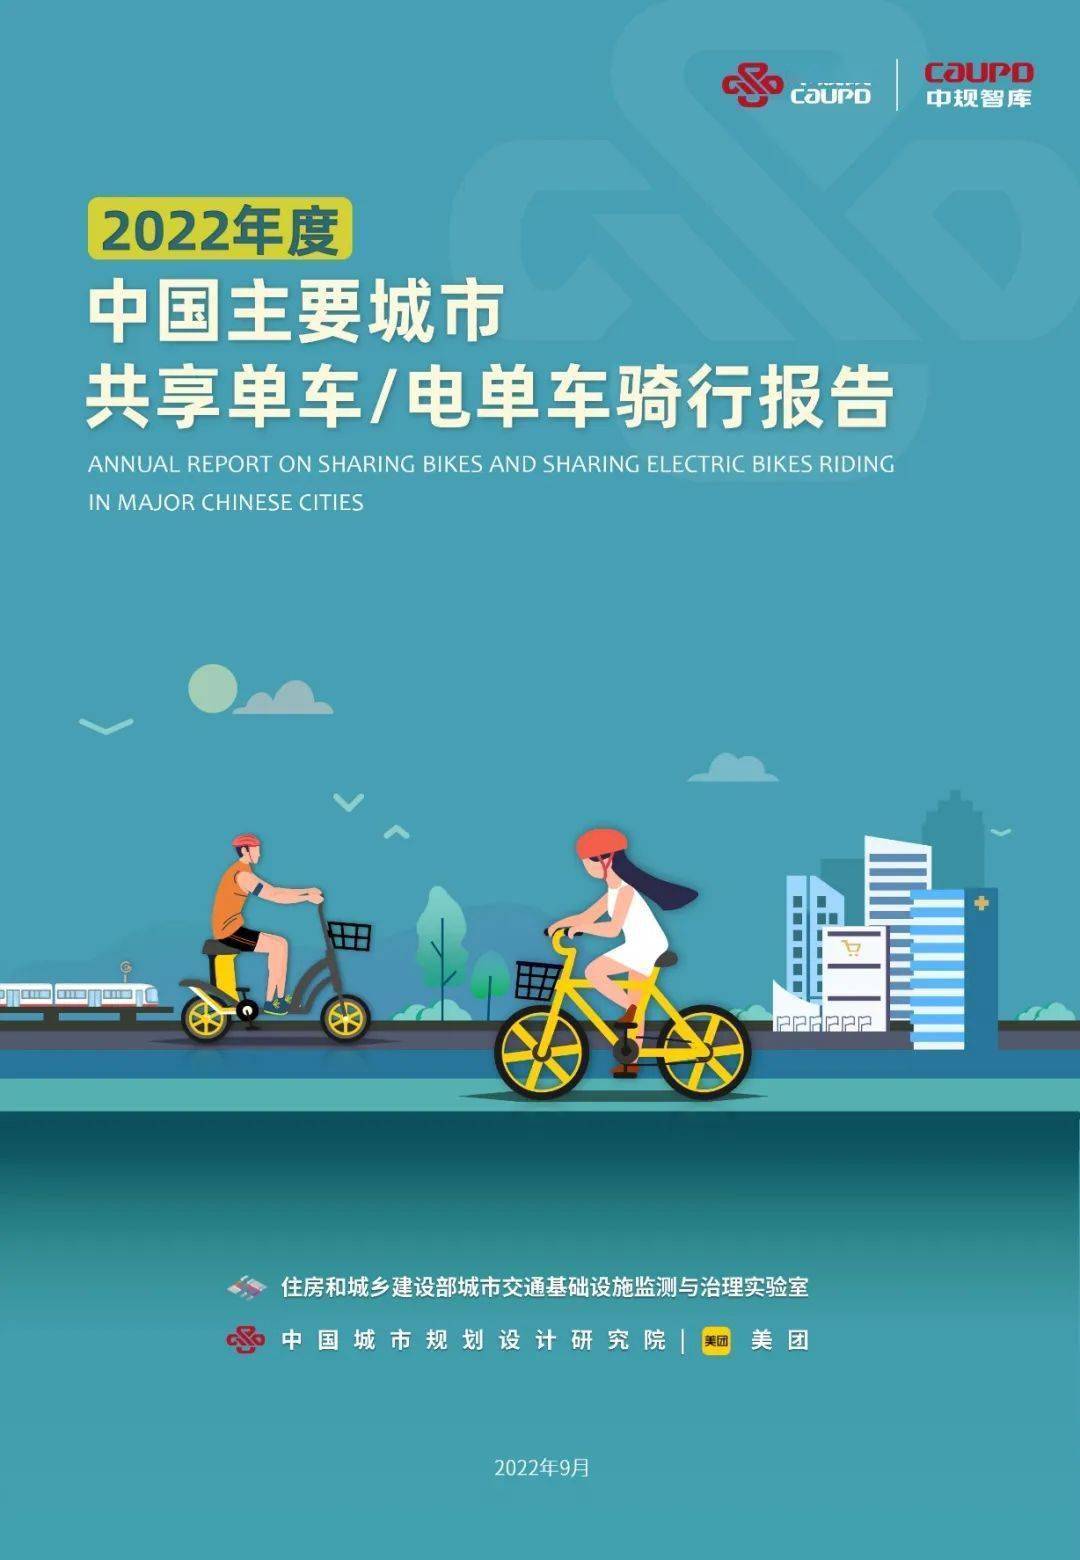 年中国主要城市共享单车 电单车骑行报告解读 变化 指标 时长